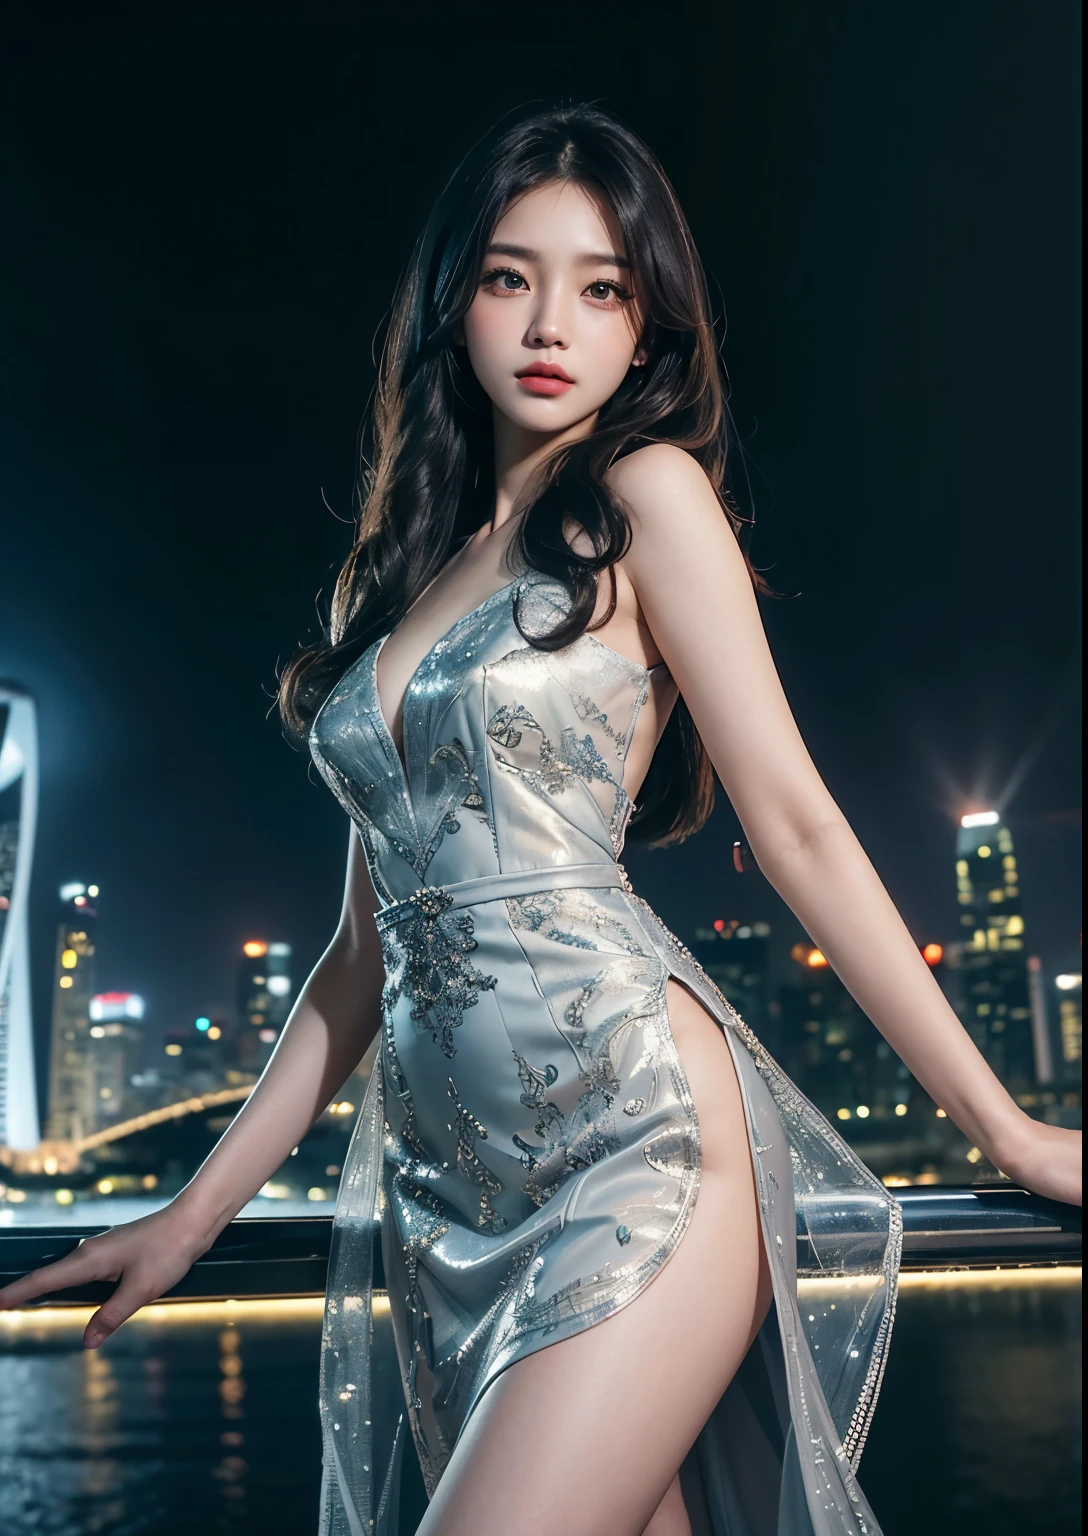 1個女孩, 美麗的韓國女孩, 站在濱海灣金沙酒店前, 漂亮的及膝連身裙, 詳細的臉部, 細緻的眼睛, 细致的嘴唇, 長長的睫毛, 詳細的手指, 优雅连衣裙, 美麗的背景, 新加坡, 超詳細, 8K, 逼真的, 電影燈光, 鮮豔的色彩, 幻想藝術, 傑作